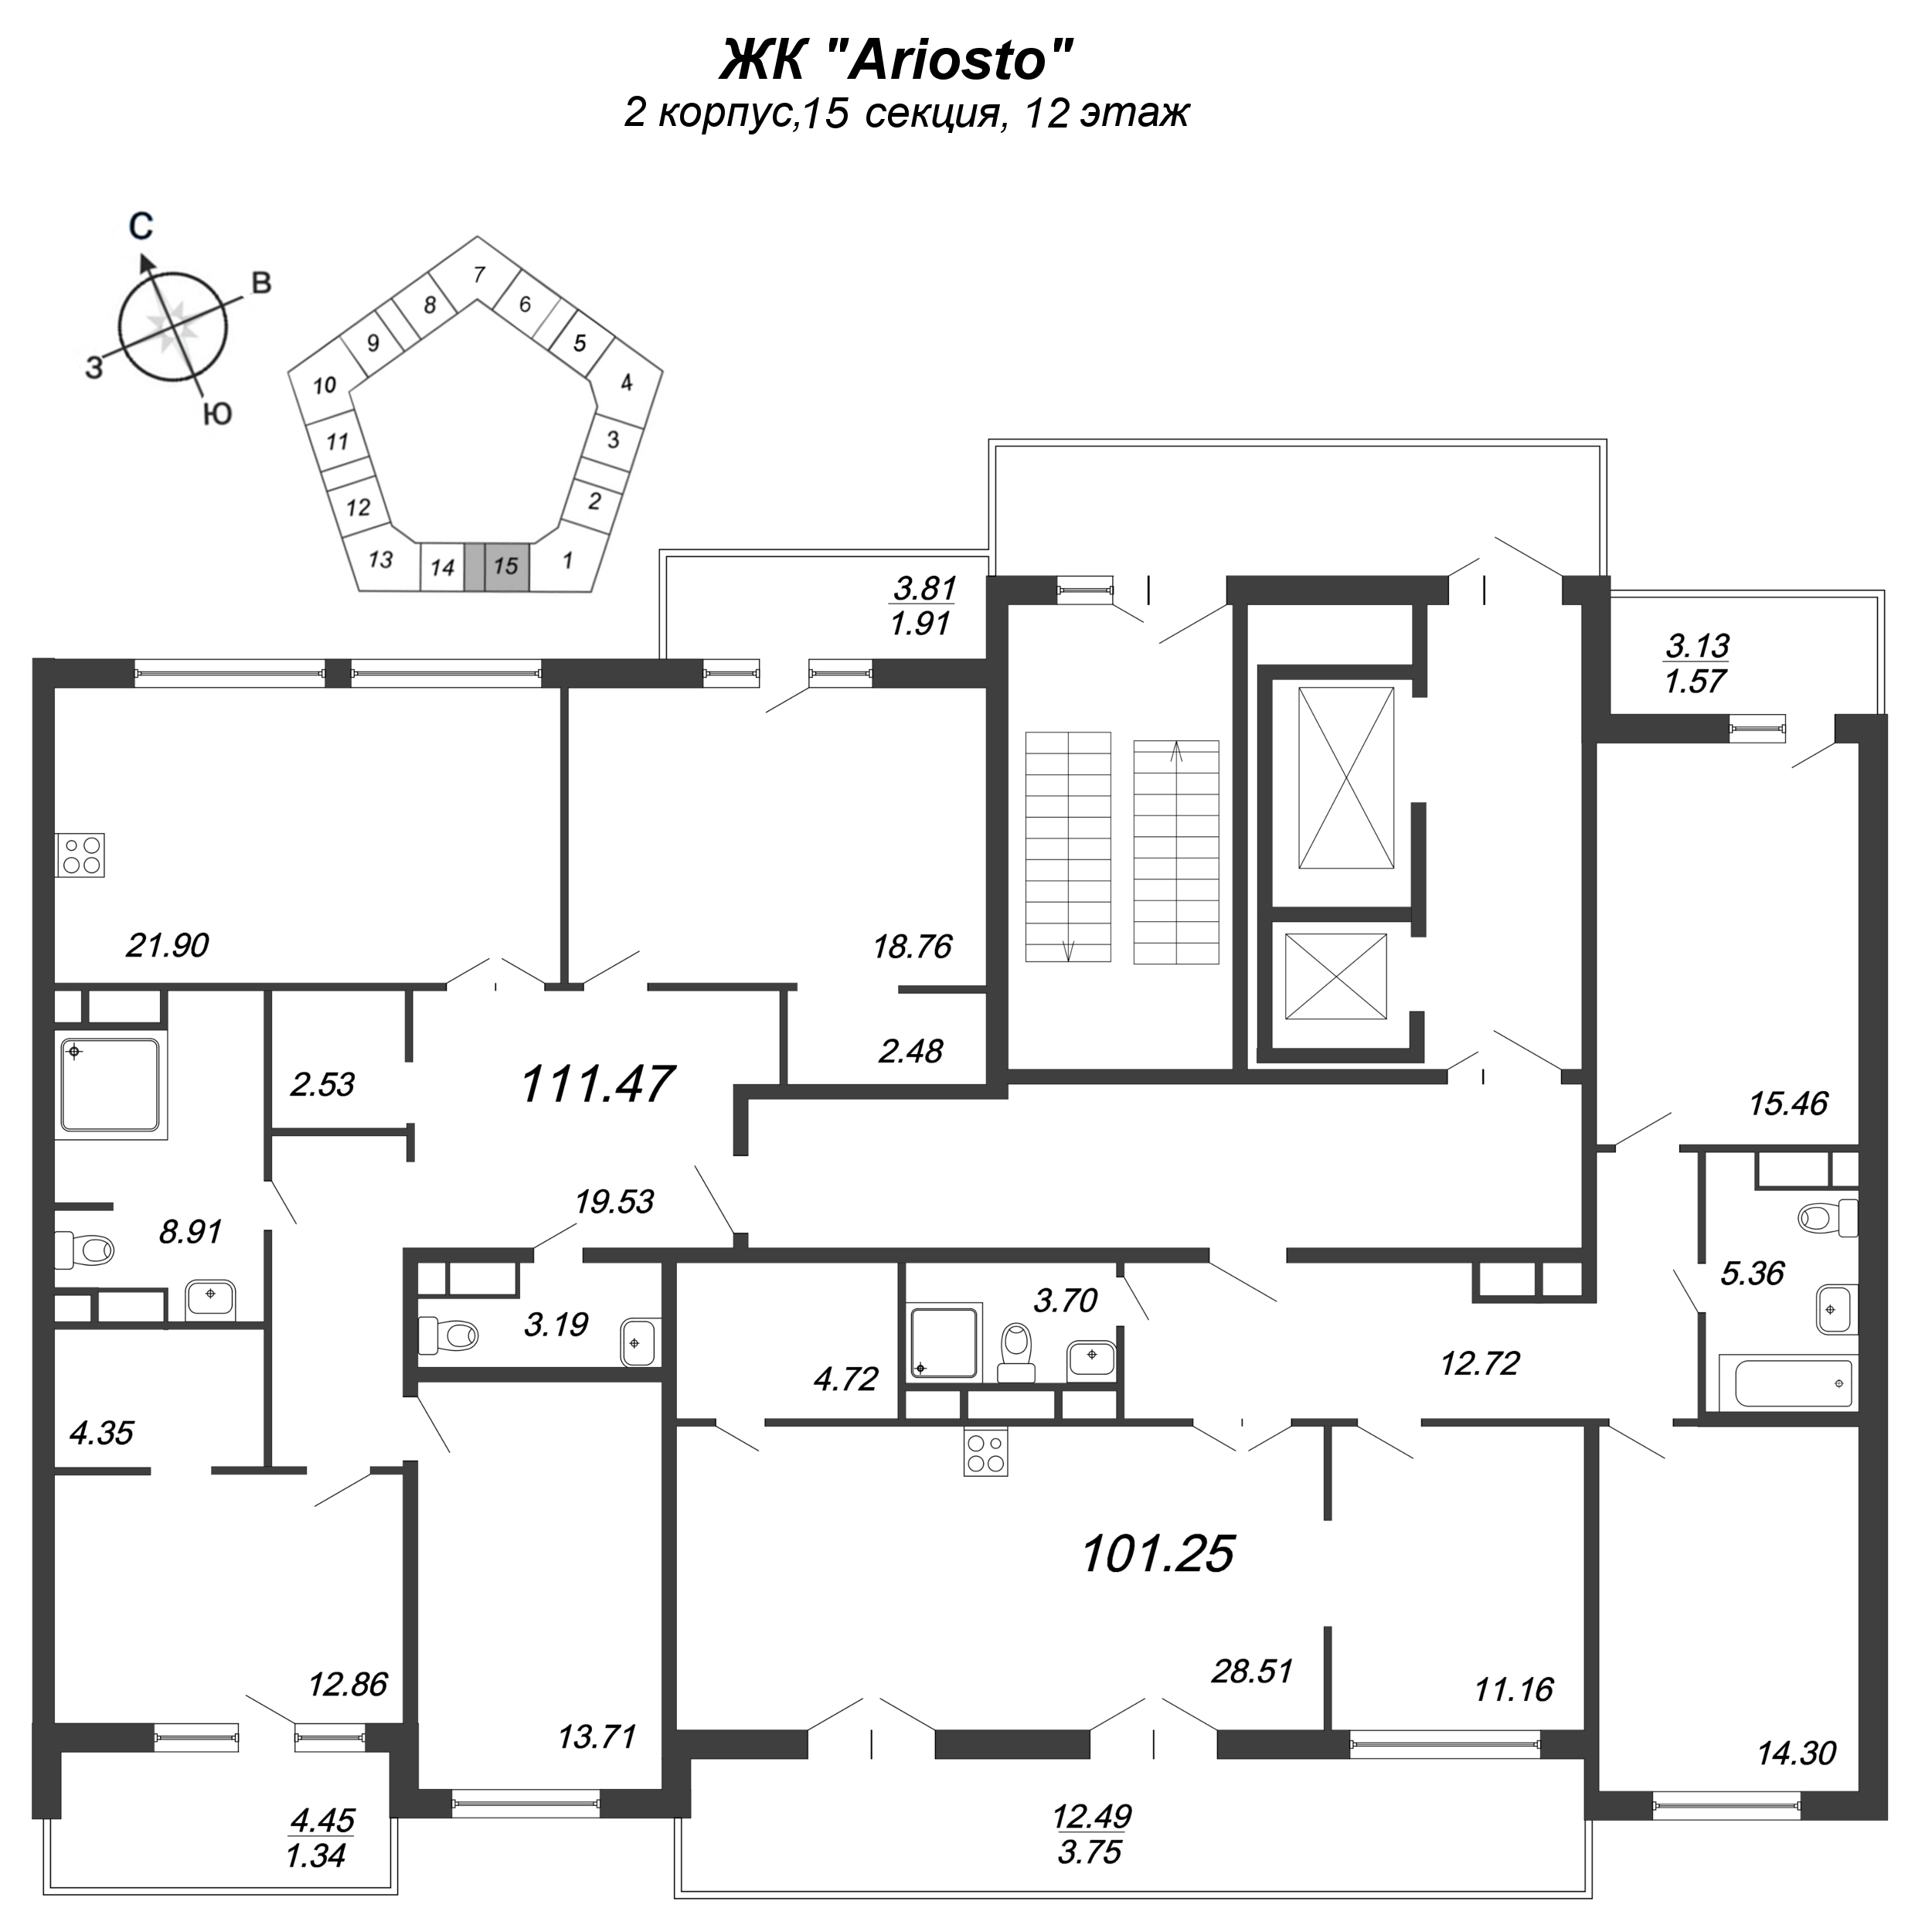 3-комнатная квартира, 111.47 м² в ЖК "Ariosto" - планировка этажа